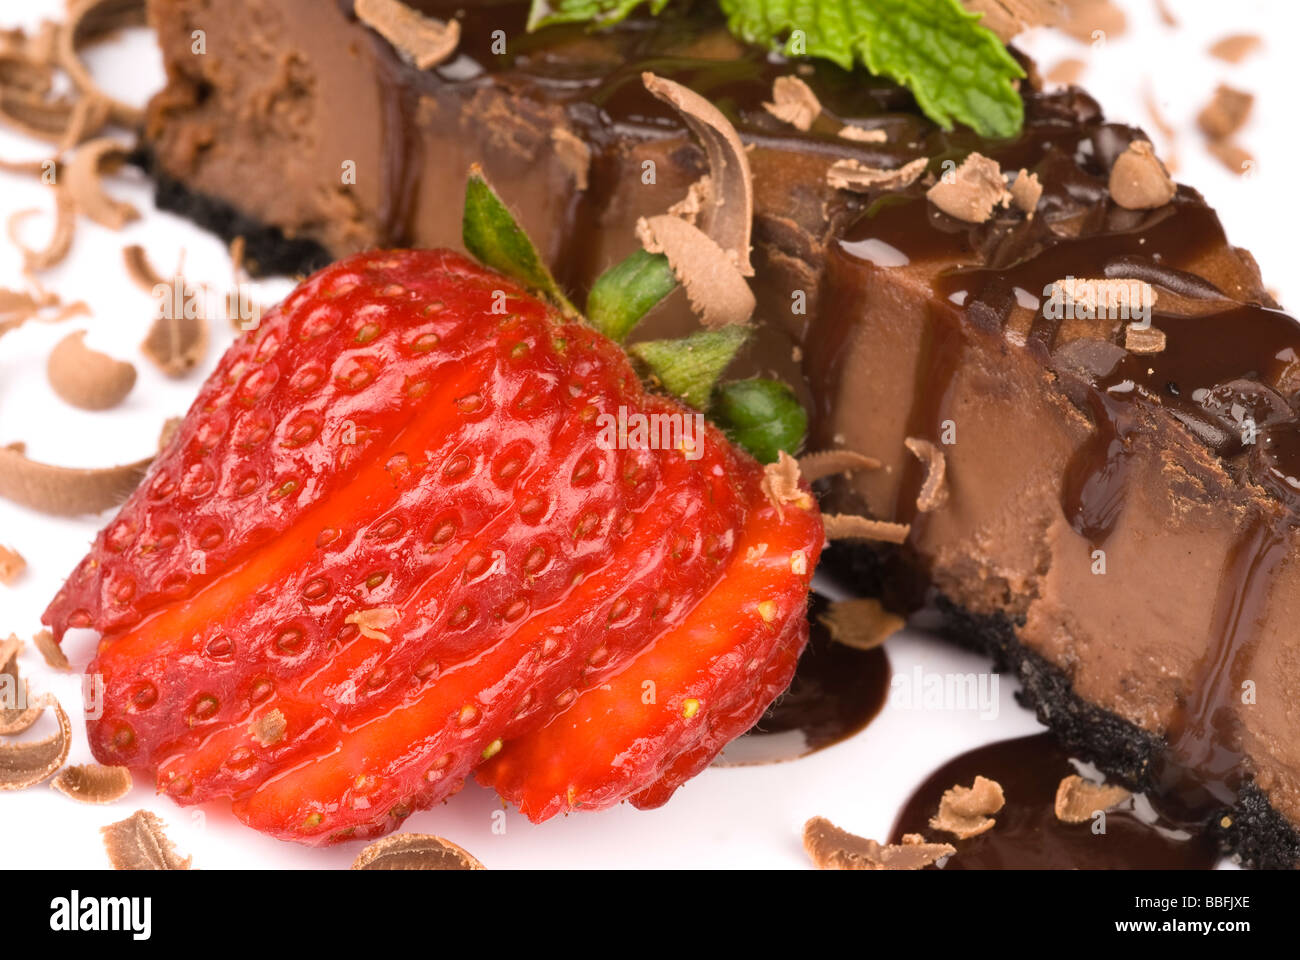 Un gros plan d'une tranche de gâteau au chocolat avec une garniture aux fraises fraîches Banque D'Images